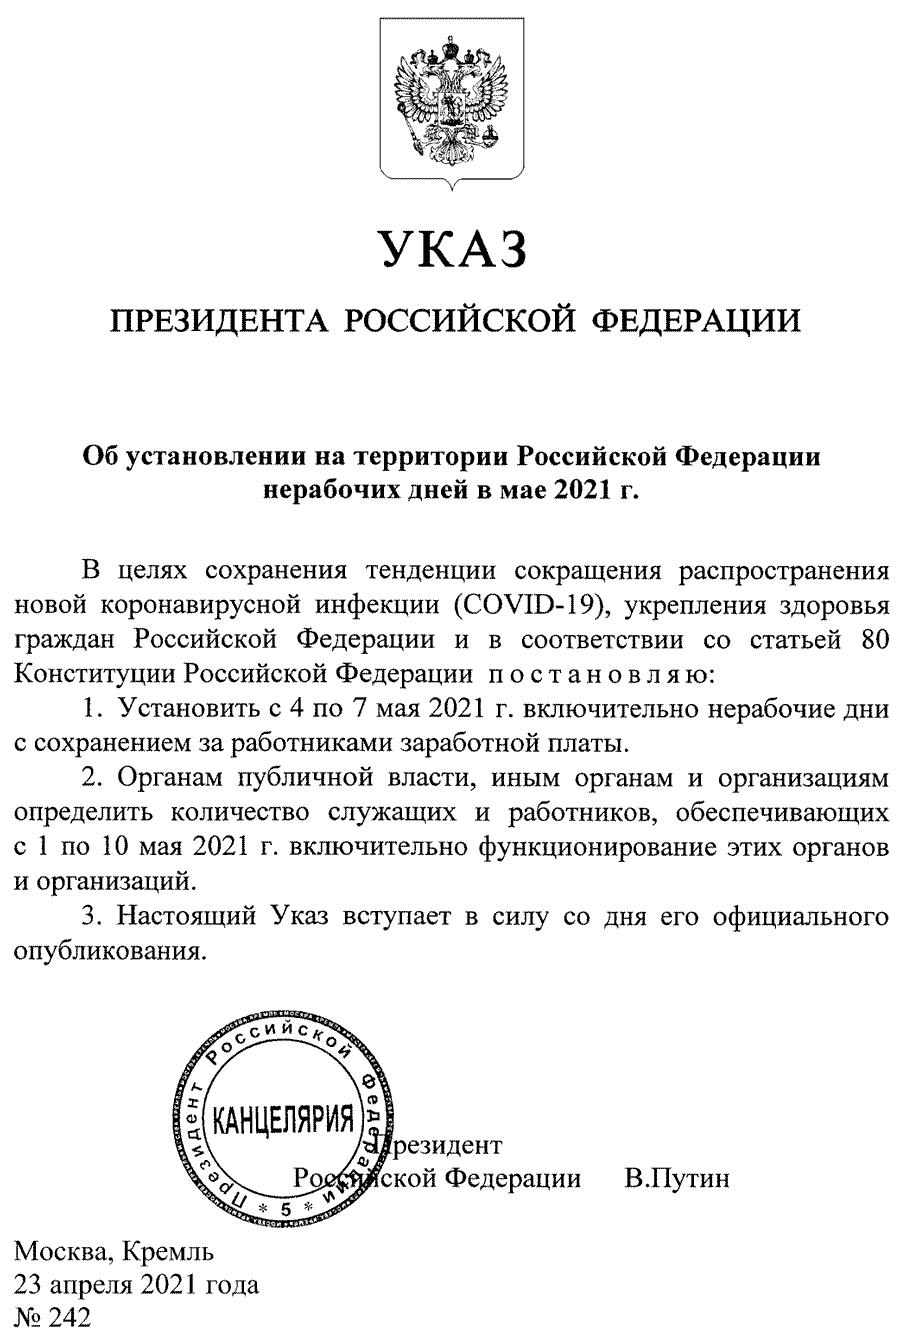 Указ Президента РФ от 23.04.2021 № 242 о нерабочих днях с 4 по 7 мая 2021 года